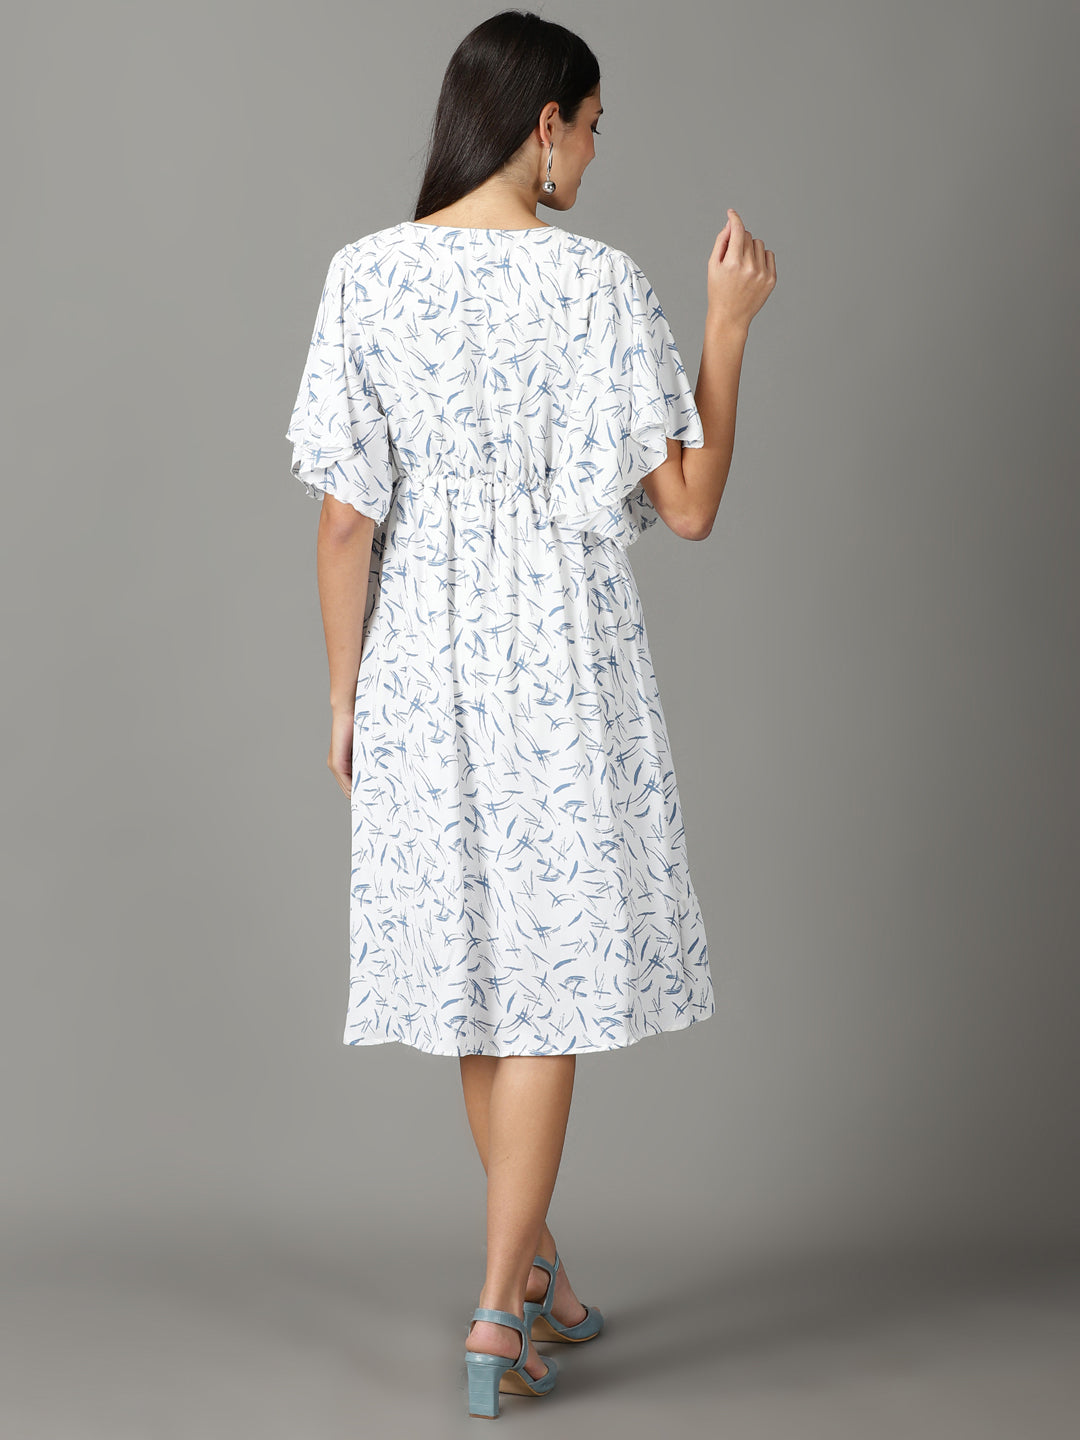 Women's White Printed Wrap Dress